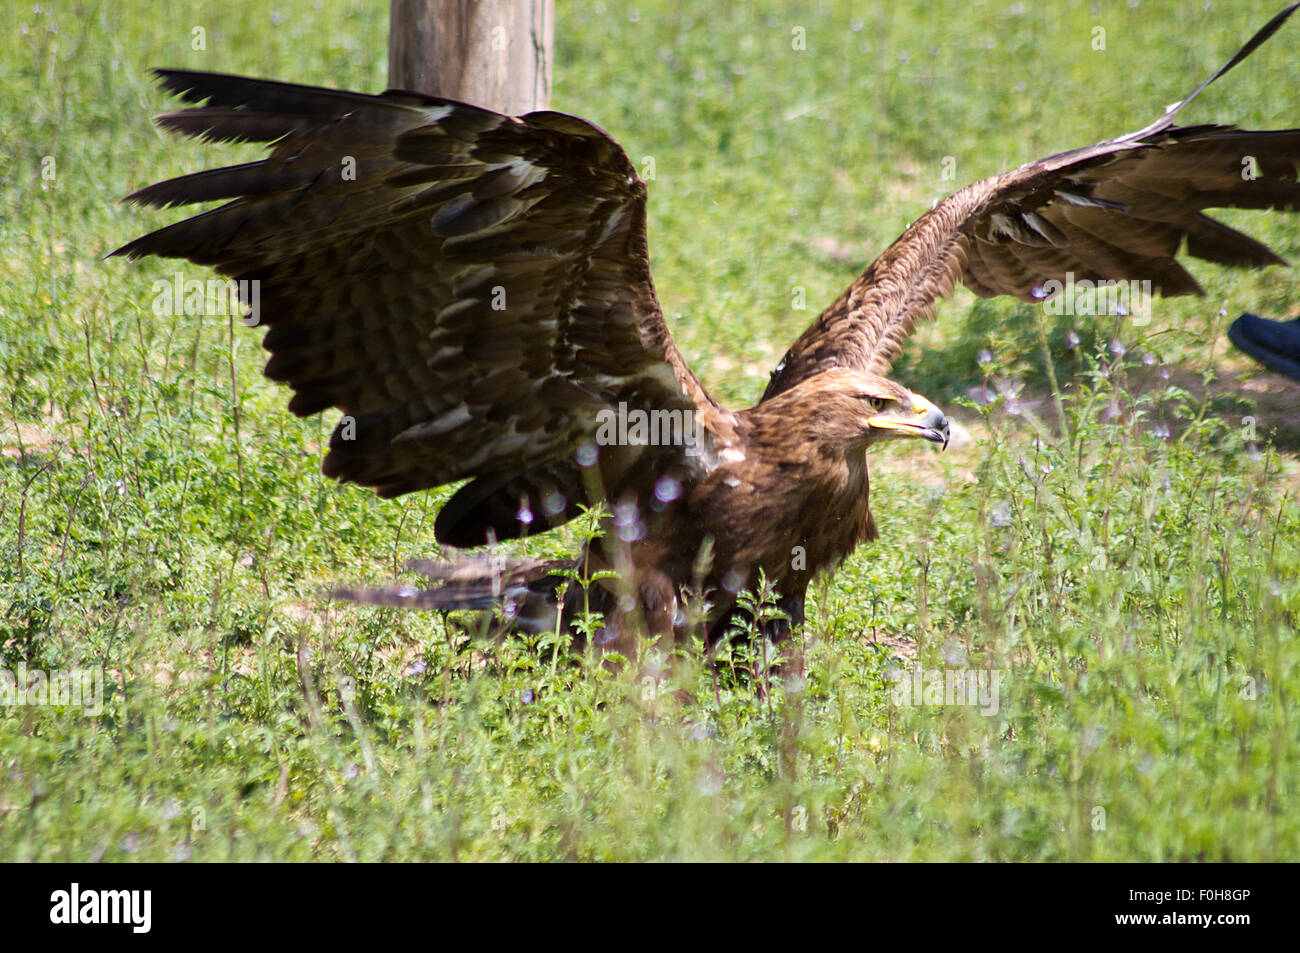 eagle wildlife rapacious animal Stock Photo